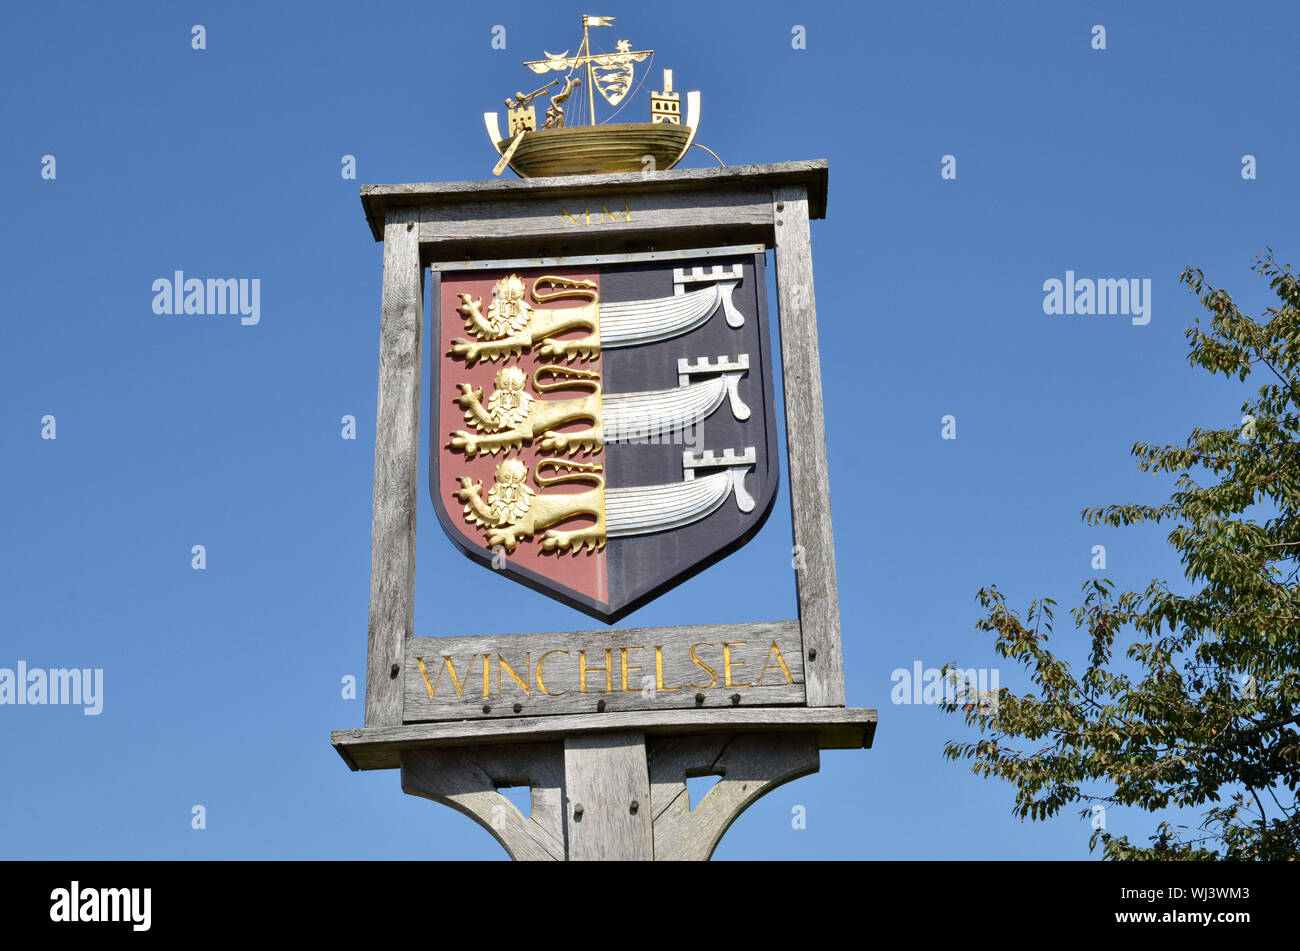 Les villes signe à Rye dans l'East Sussex. Elle est réputée pour être la plus petite ville de Grande-Bretagne. Banque D'Images